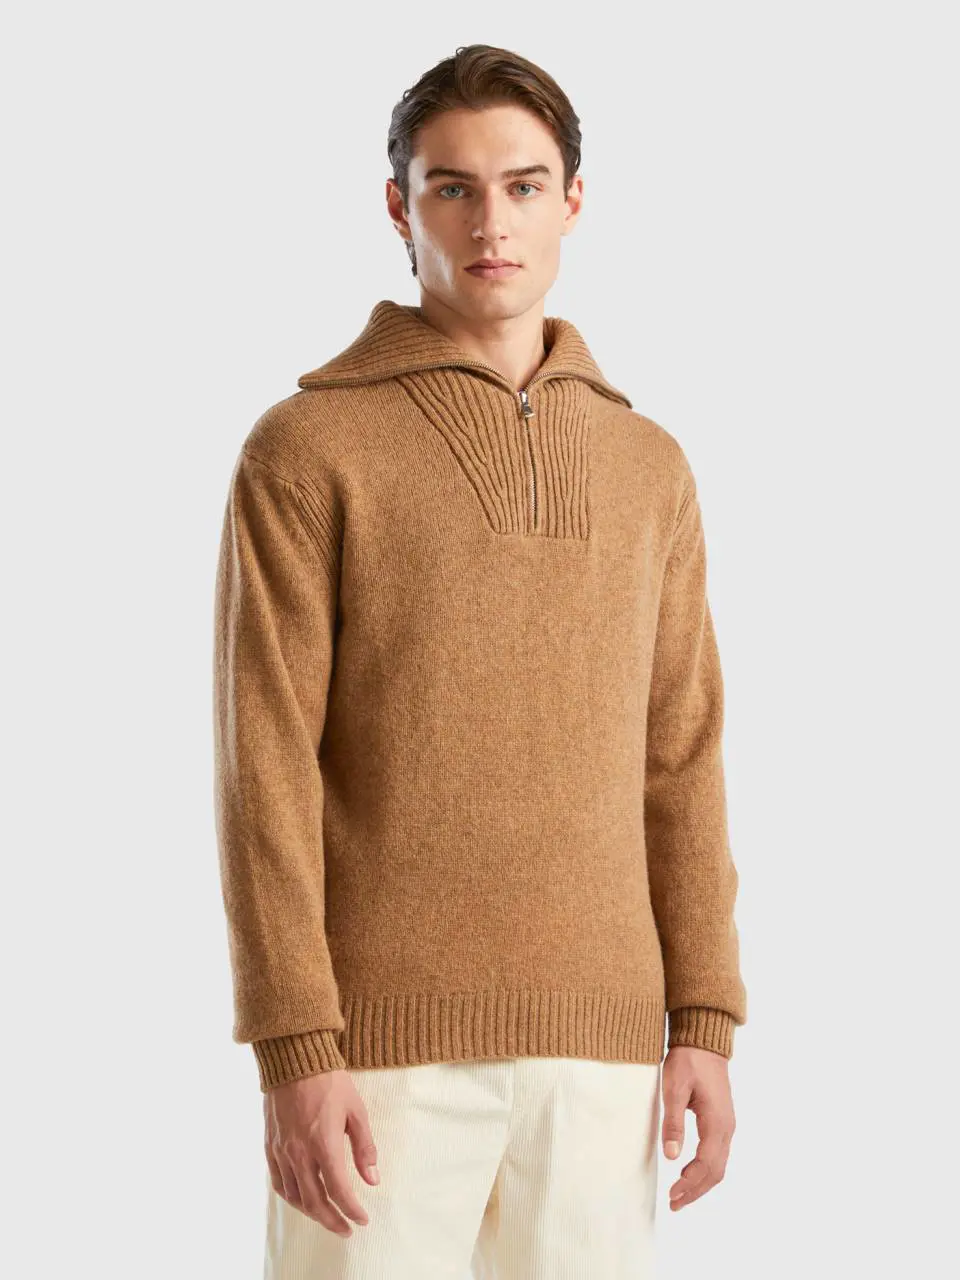 Benetton camel sweater in pure shetland wool. 1